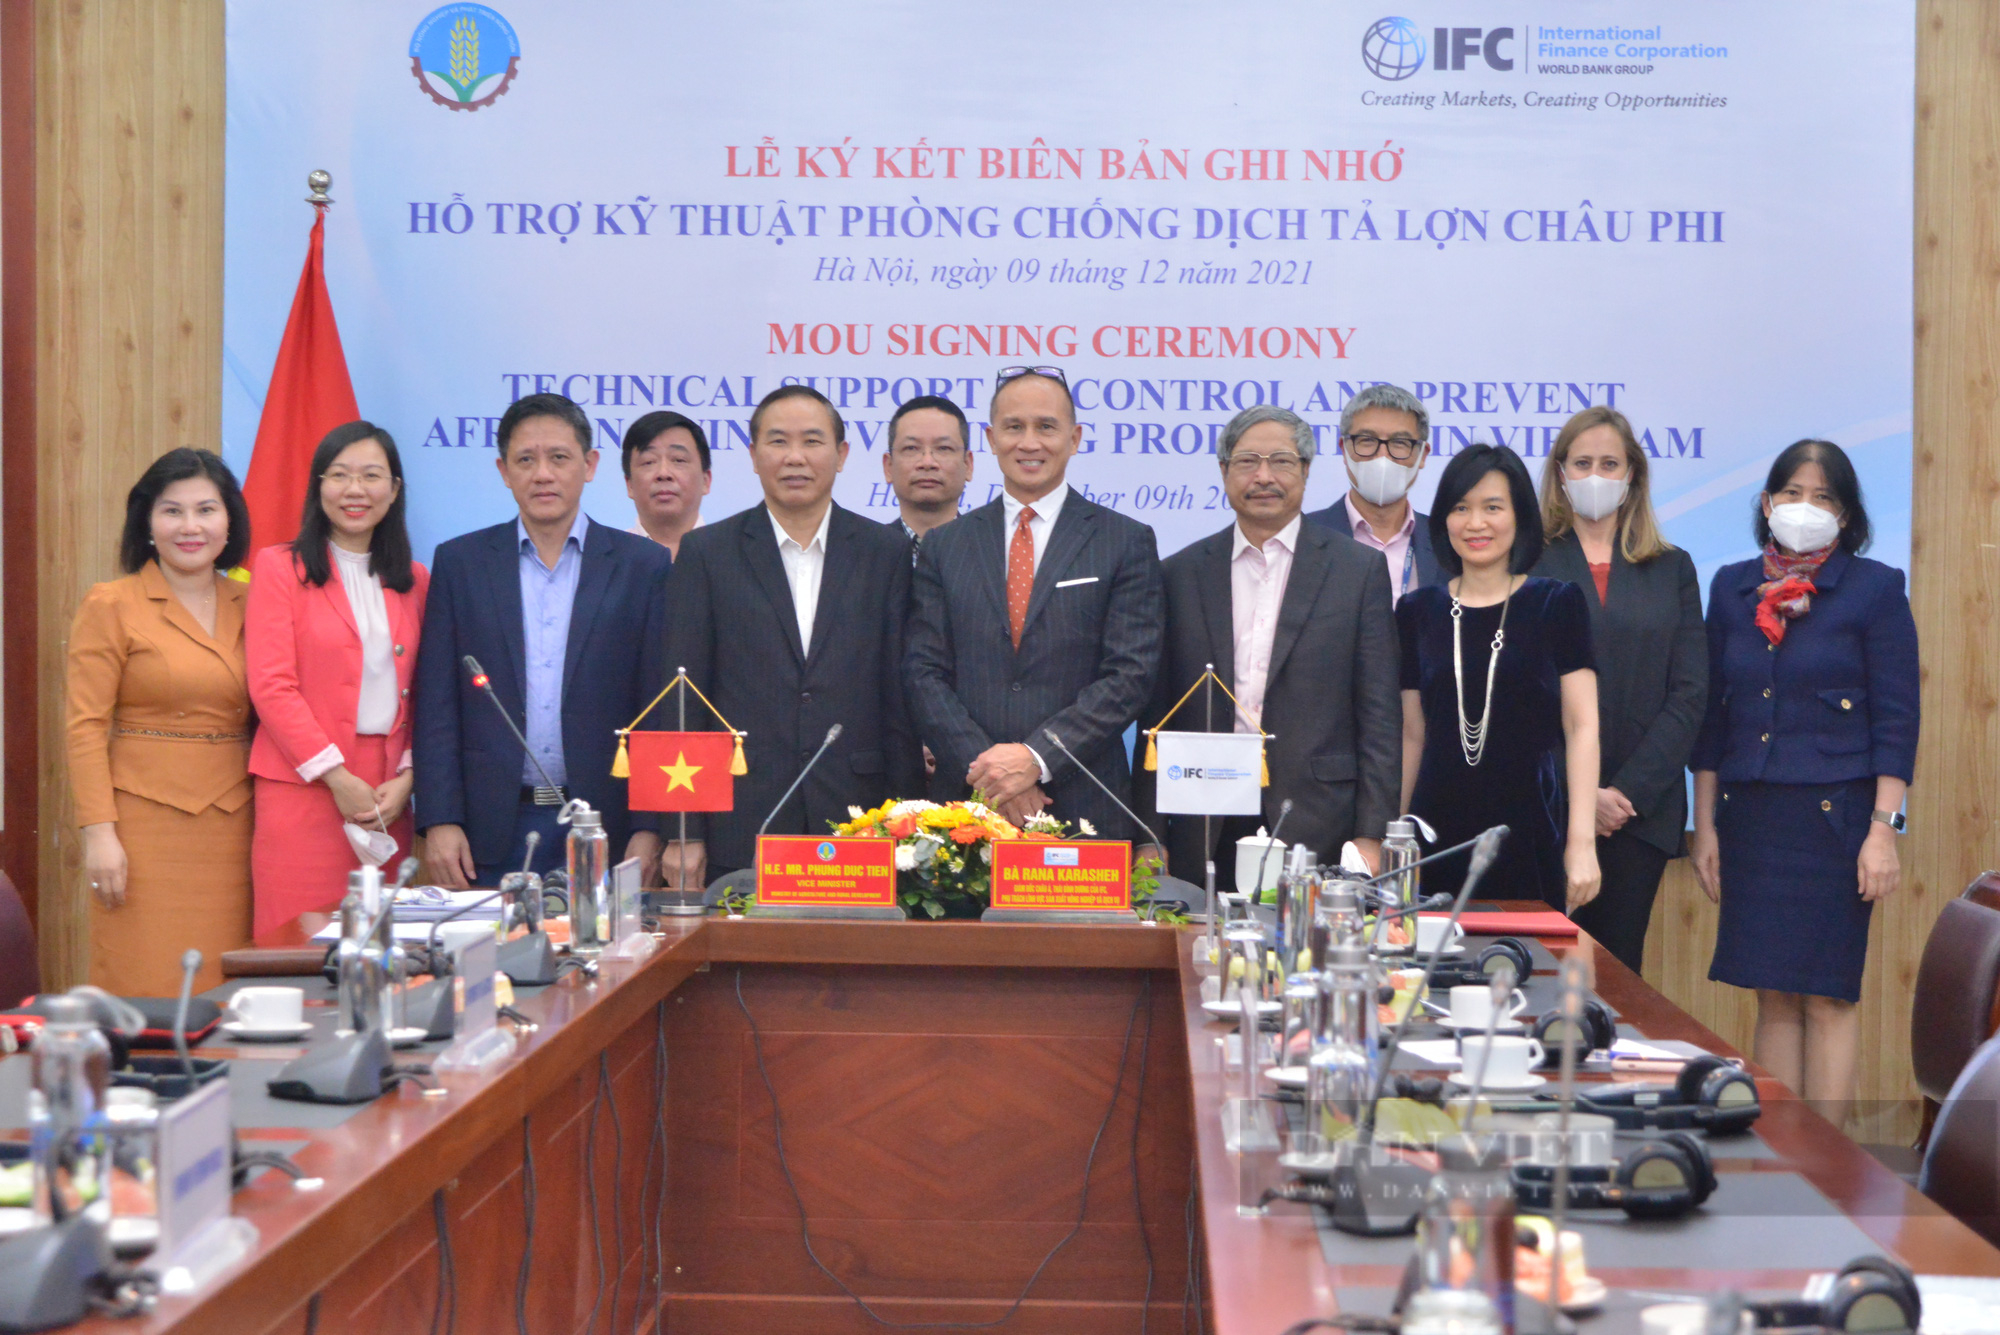 Tổ chức Tài chính quốc tế (IFC) hỗ trợ kỹ thuật phòng, chống dịch tả lợn Châu Phi ở Việt Nam - Ảnh 3.